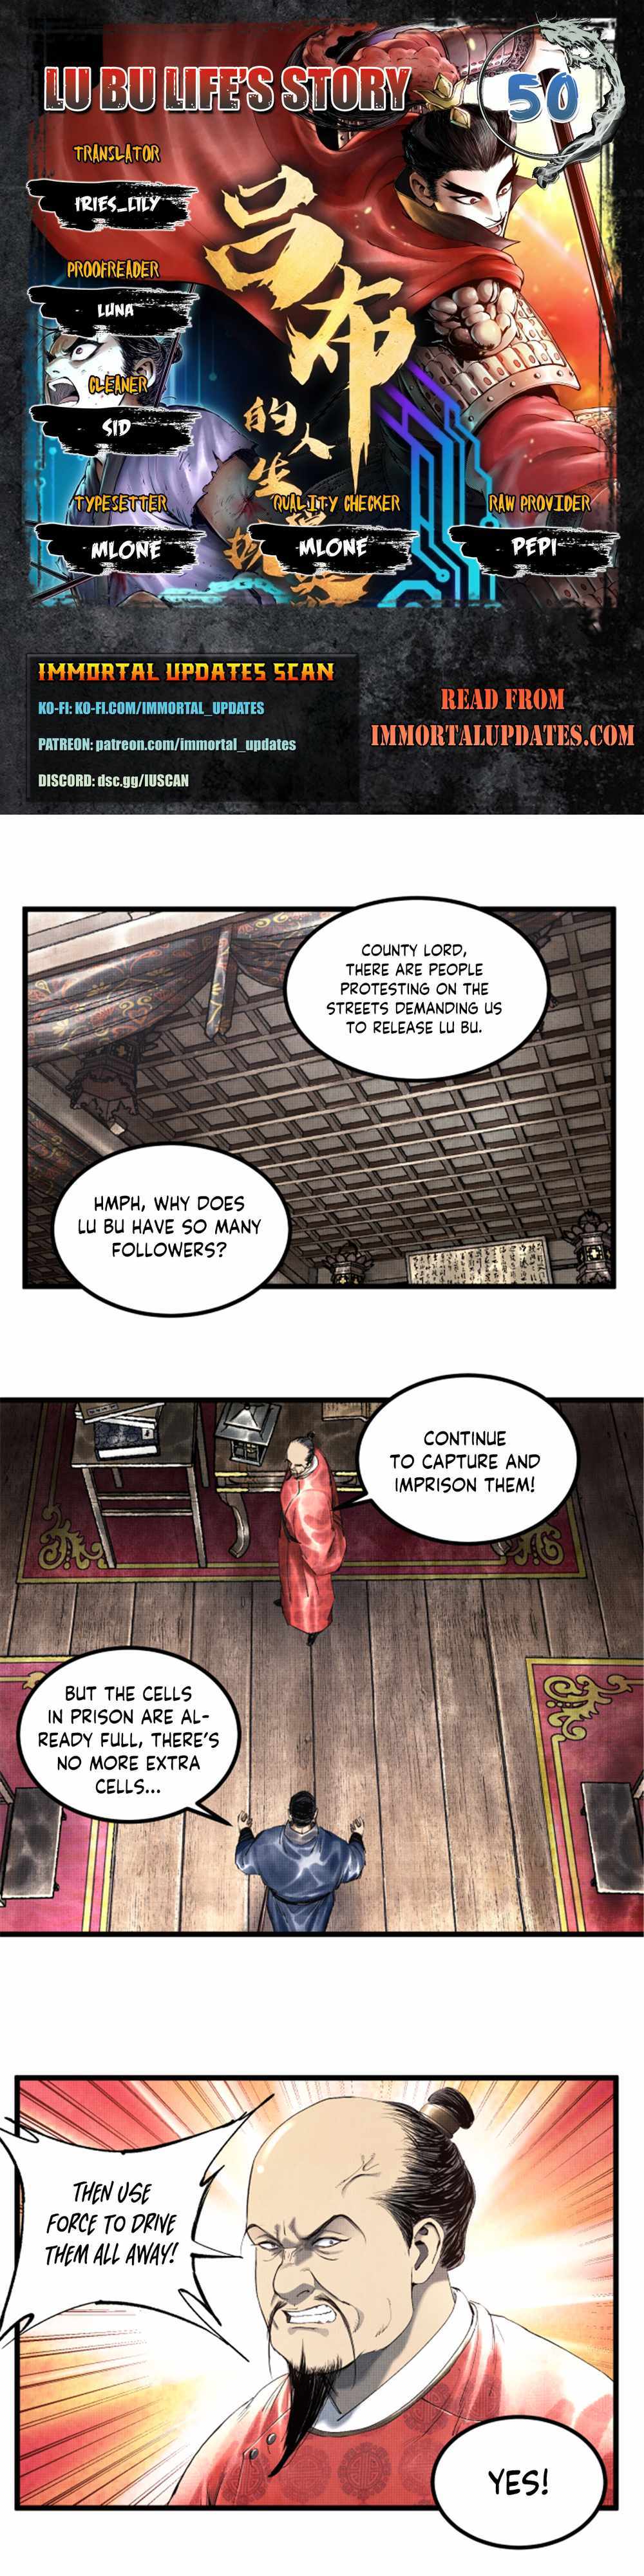 Lu Bu’S Life Story - Page 1